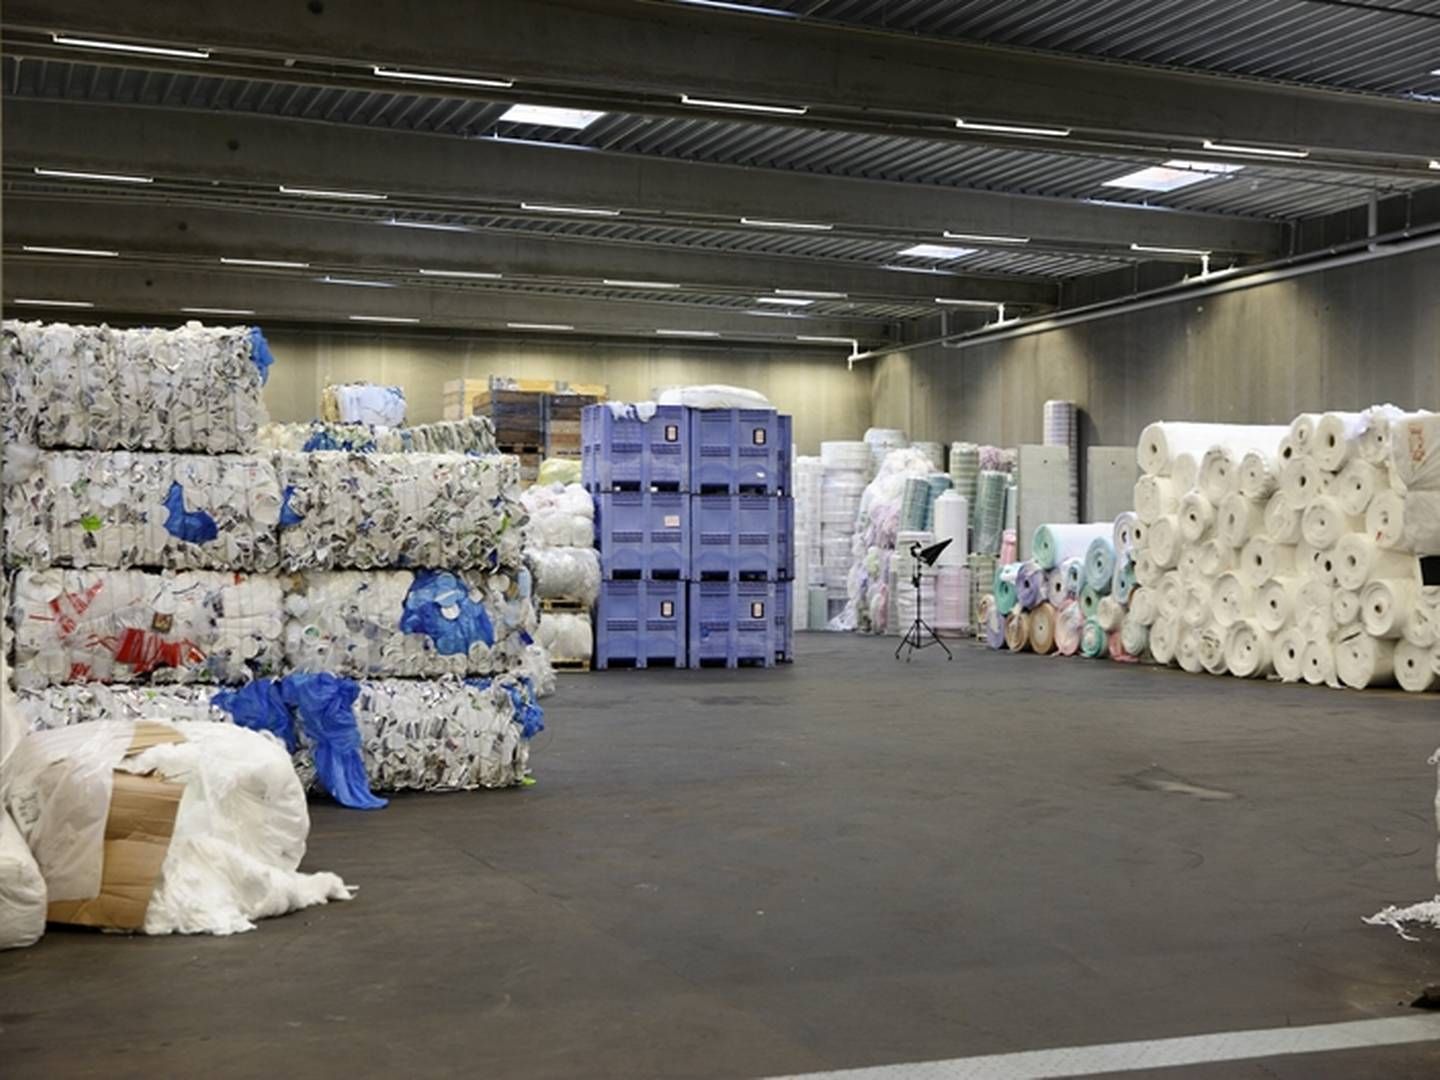 RC Plast aftager plastspild- og affald fra producenter og genbrugspladser, som virksomheden forsorterer, inden det neddeles og vaskes. Herefter finsorterer virksomheden plastaffaldet efter polymertype og sælger det tilbage til plastindustrien. | Foto: Rc Plast/pr